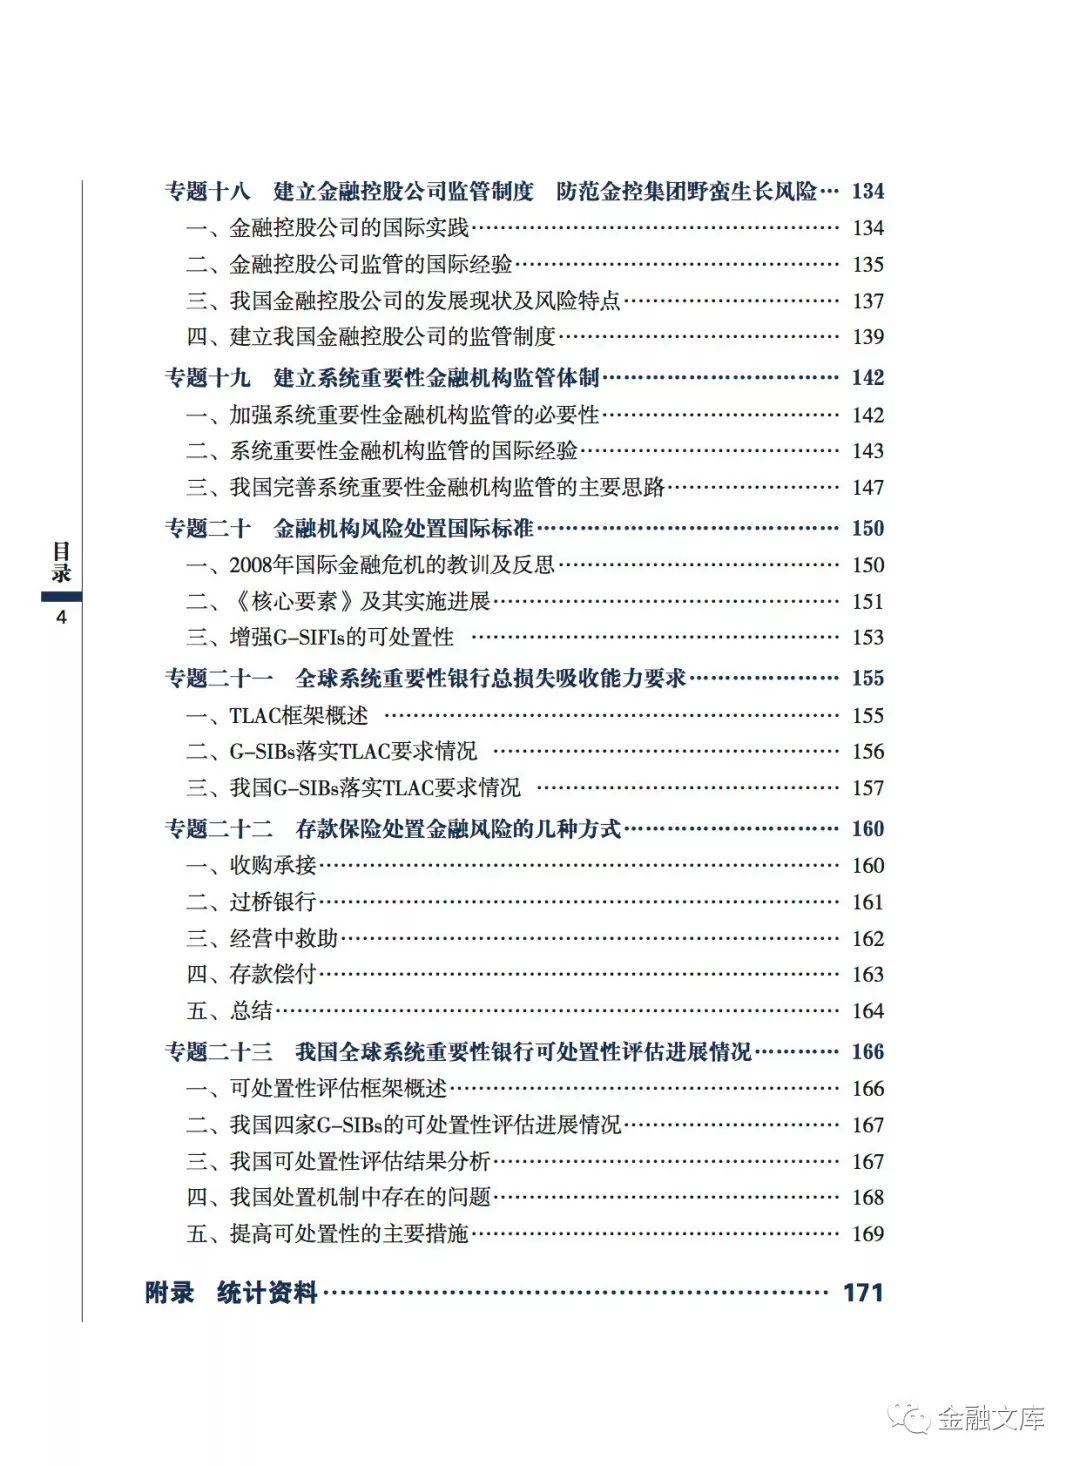 中国人民银行发布《中国金融稳定报告（2018）》